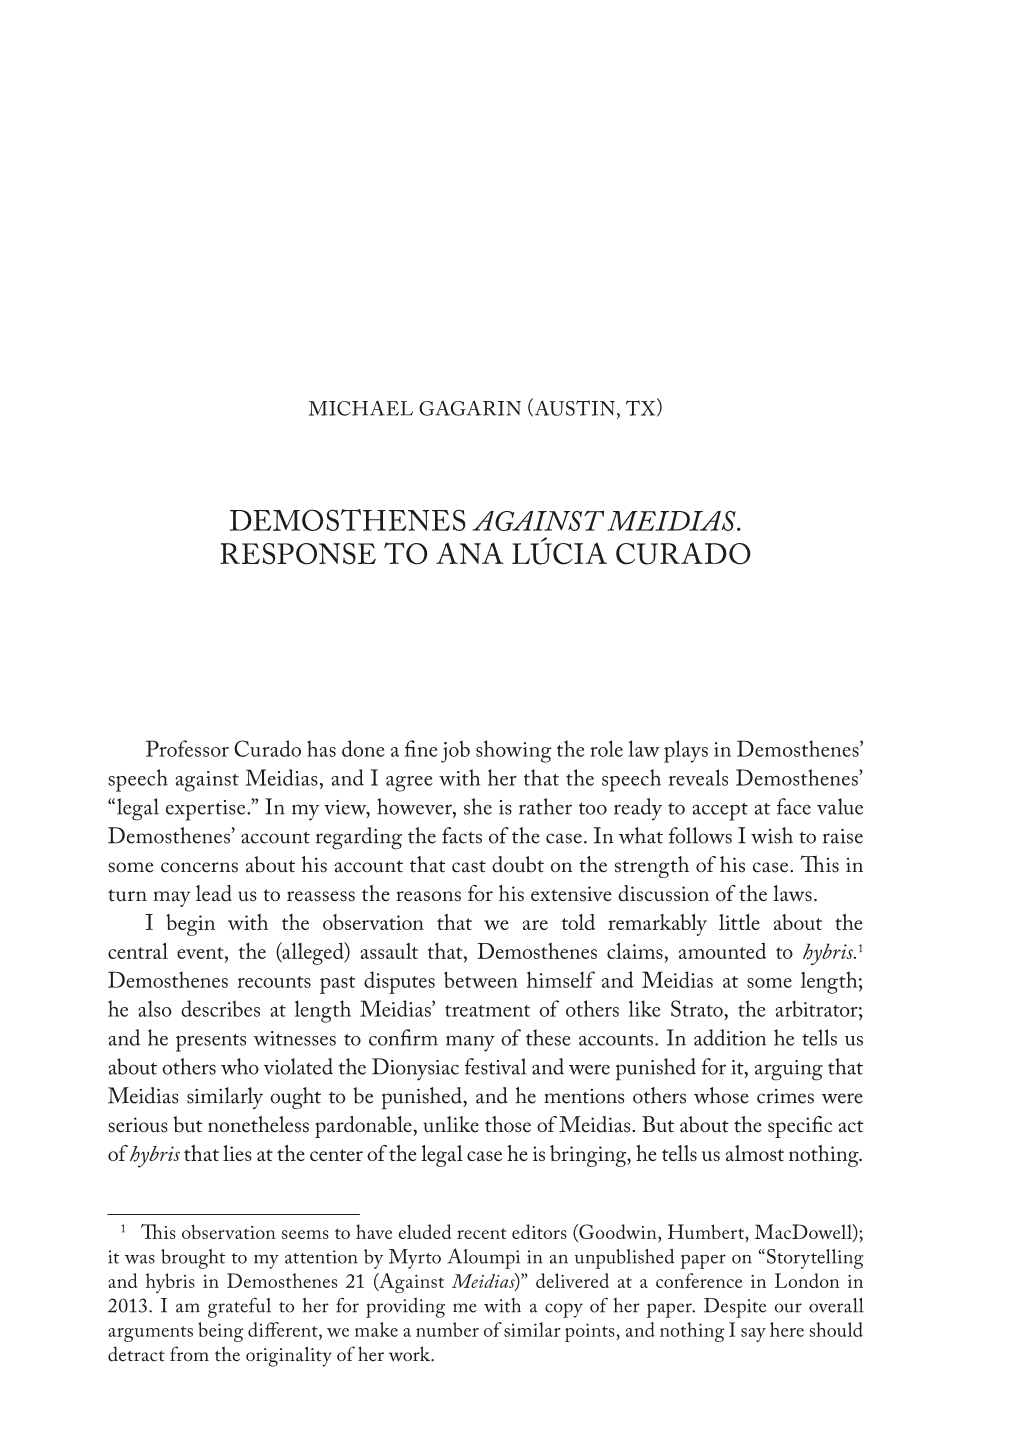 Demosthenes Against Meidias. Response to Ana Lúcia Curado